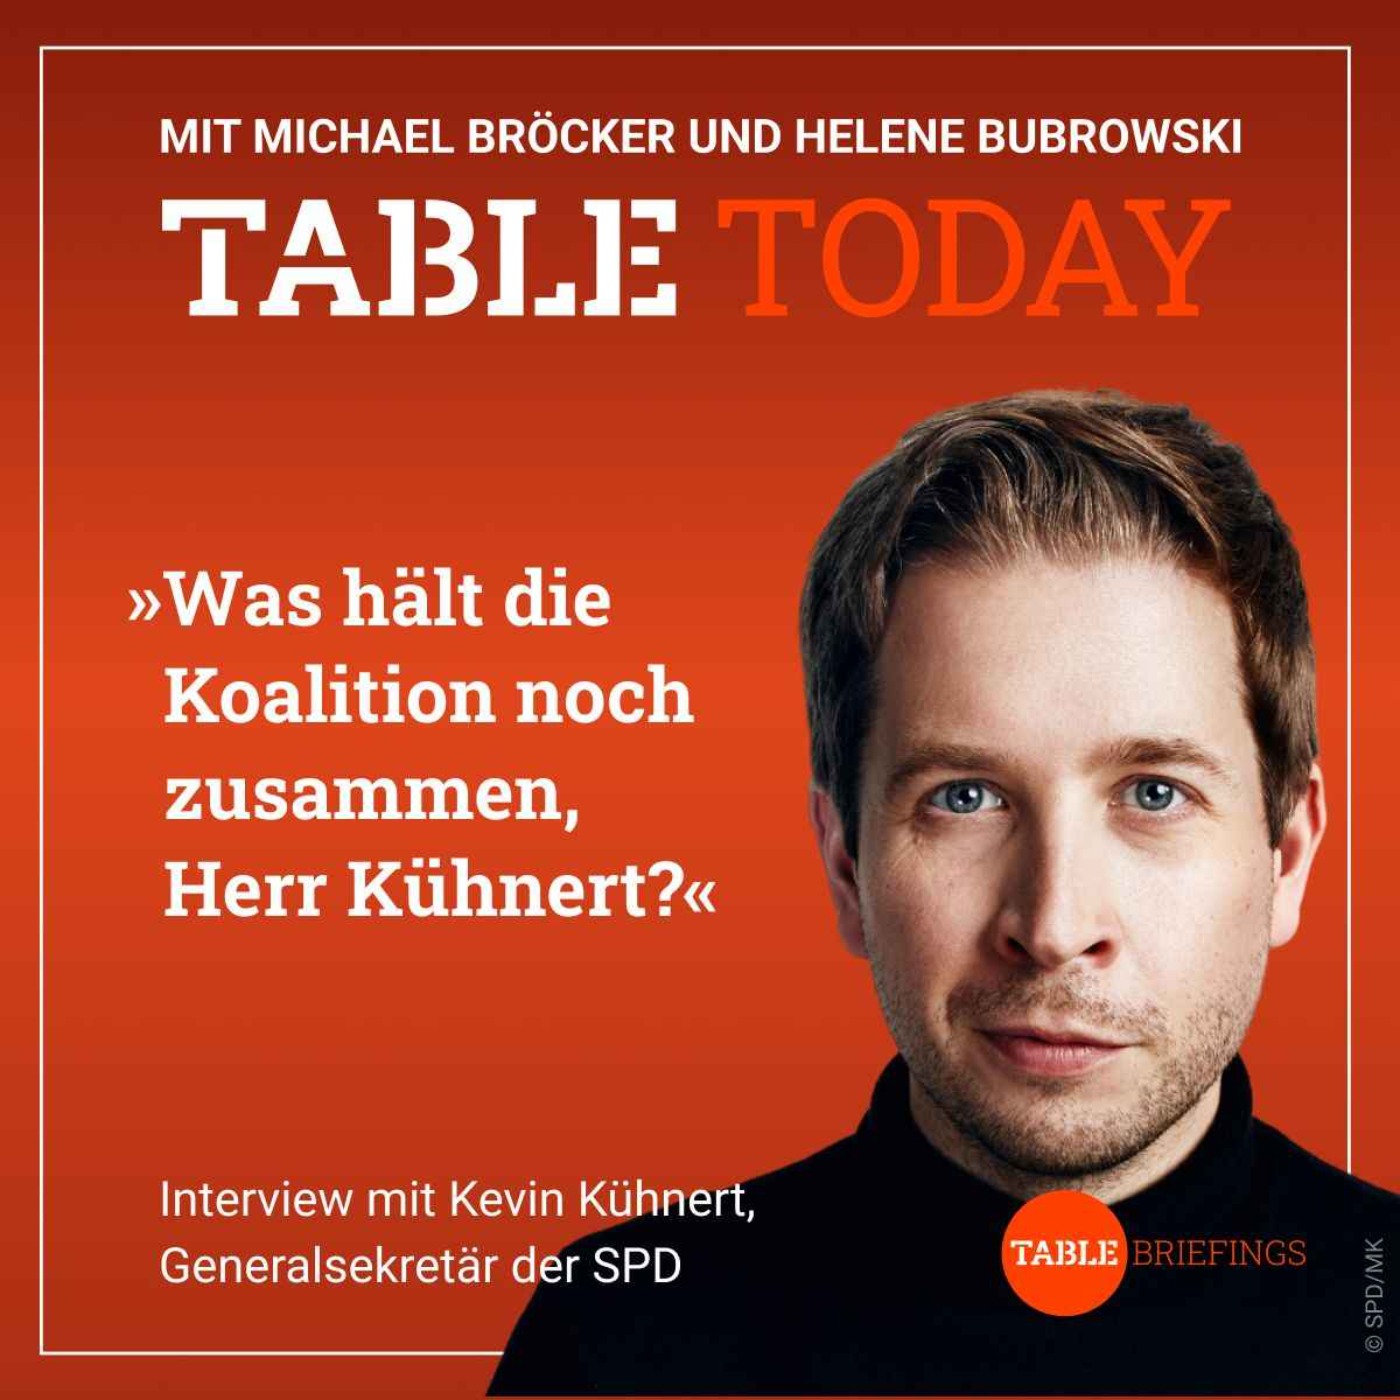 Was hält die Koalition noch zusammen, Herr Kühnert?